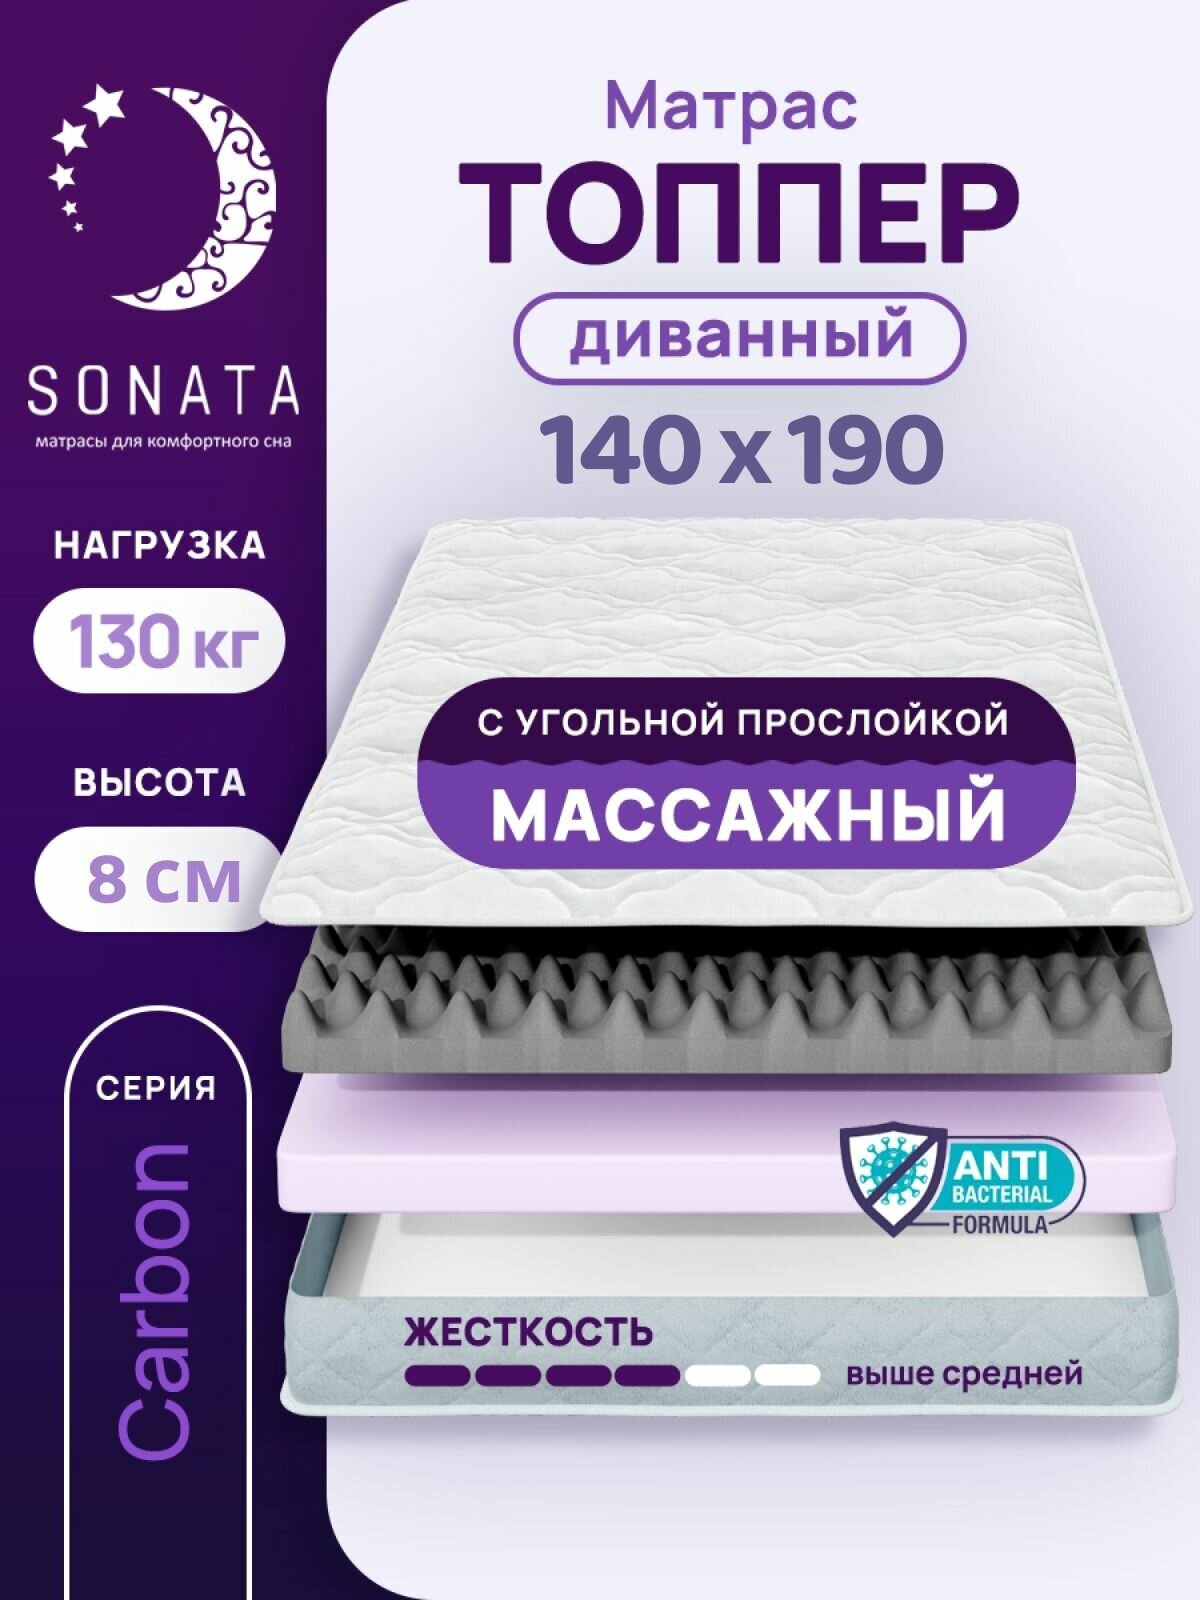 Топпер матрас 140х190 см SONATA, ортопедический, беспружинный, двуспальный, тонкий матрац для дивана, кровати, высота 8 см с массажным эффектом